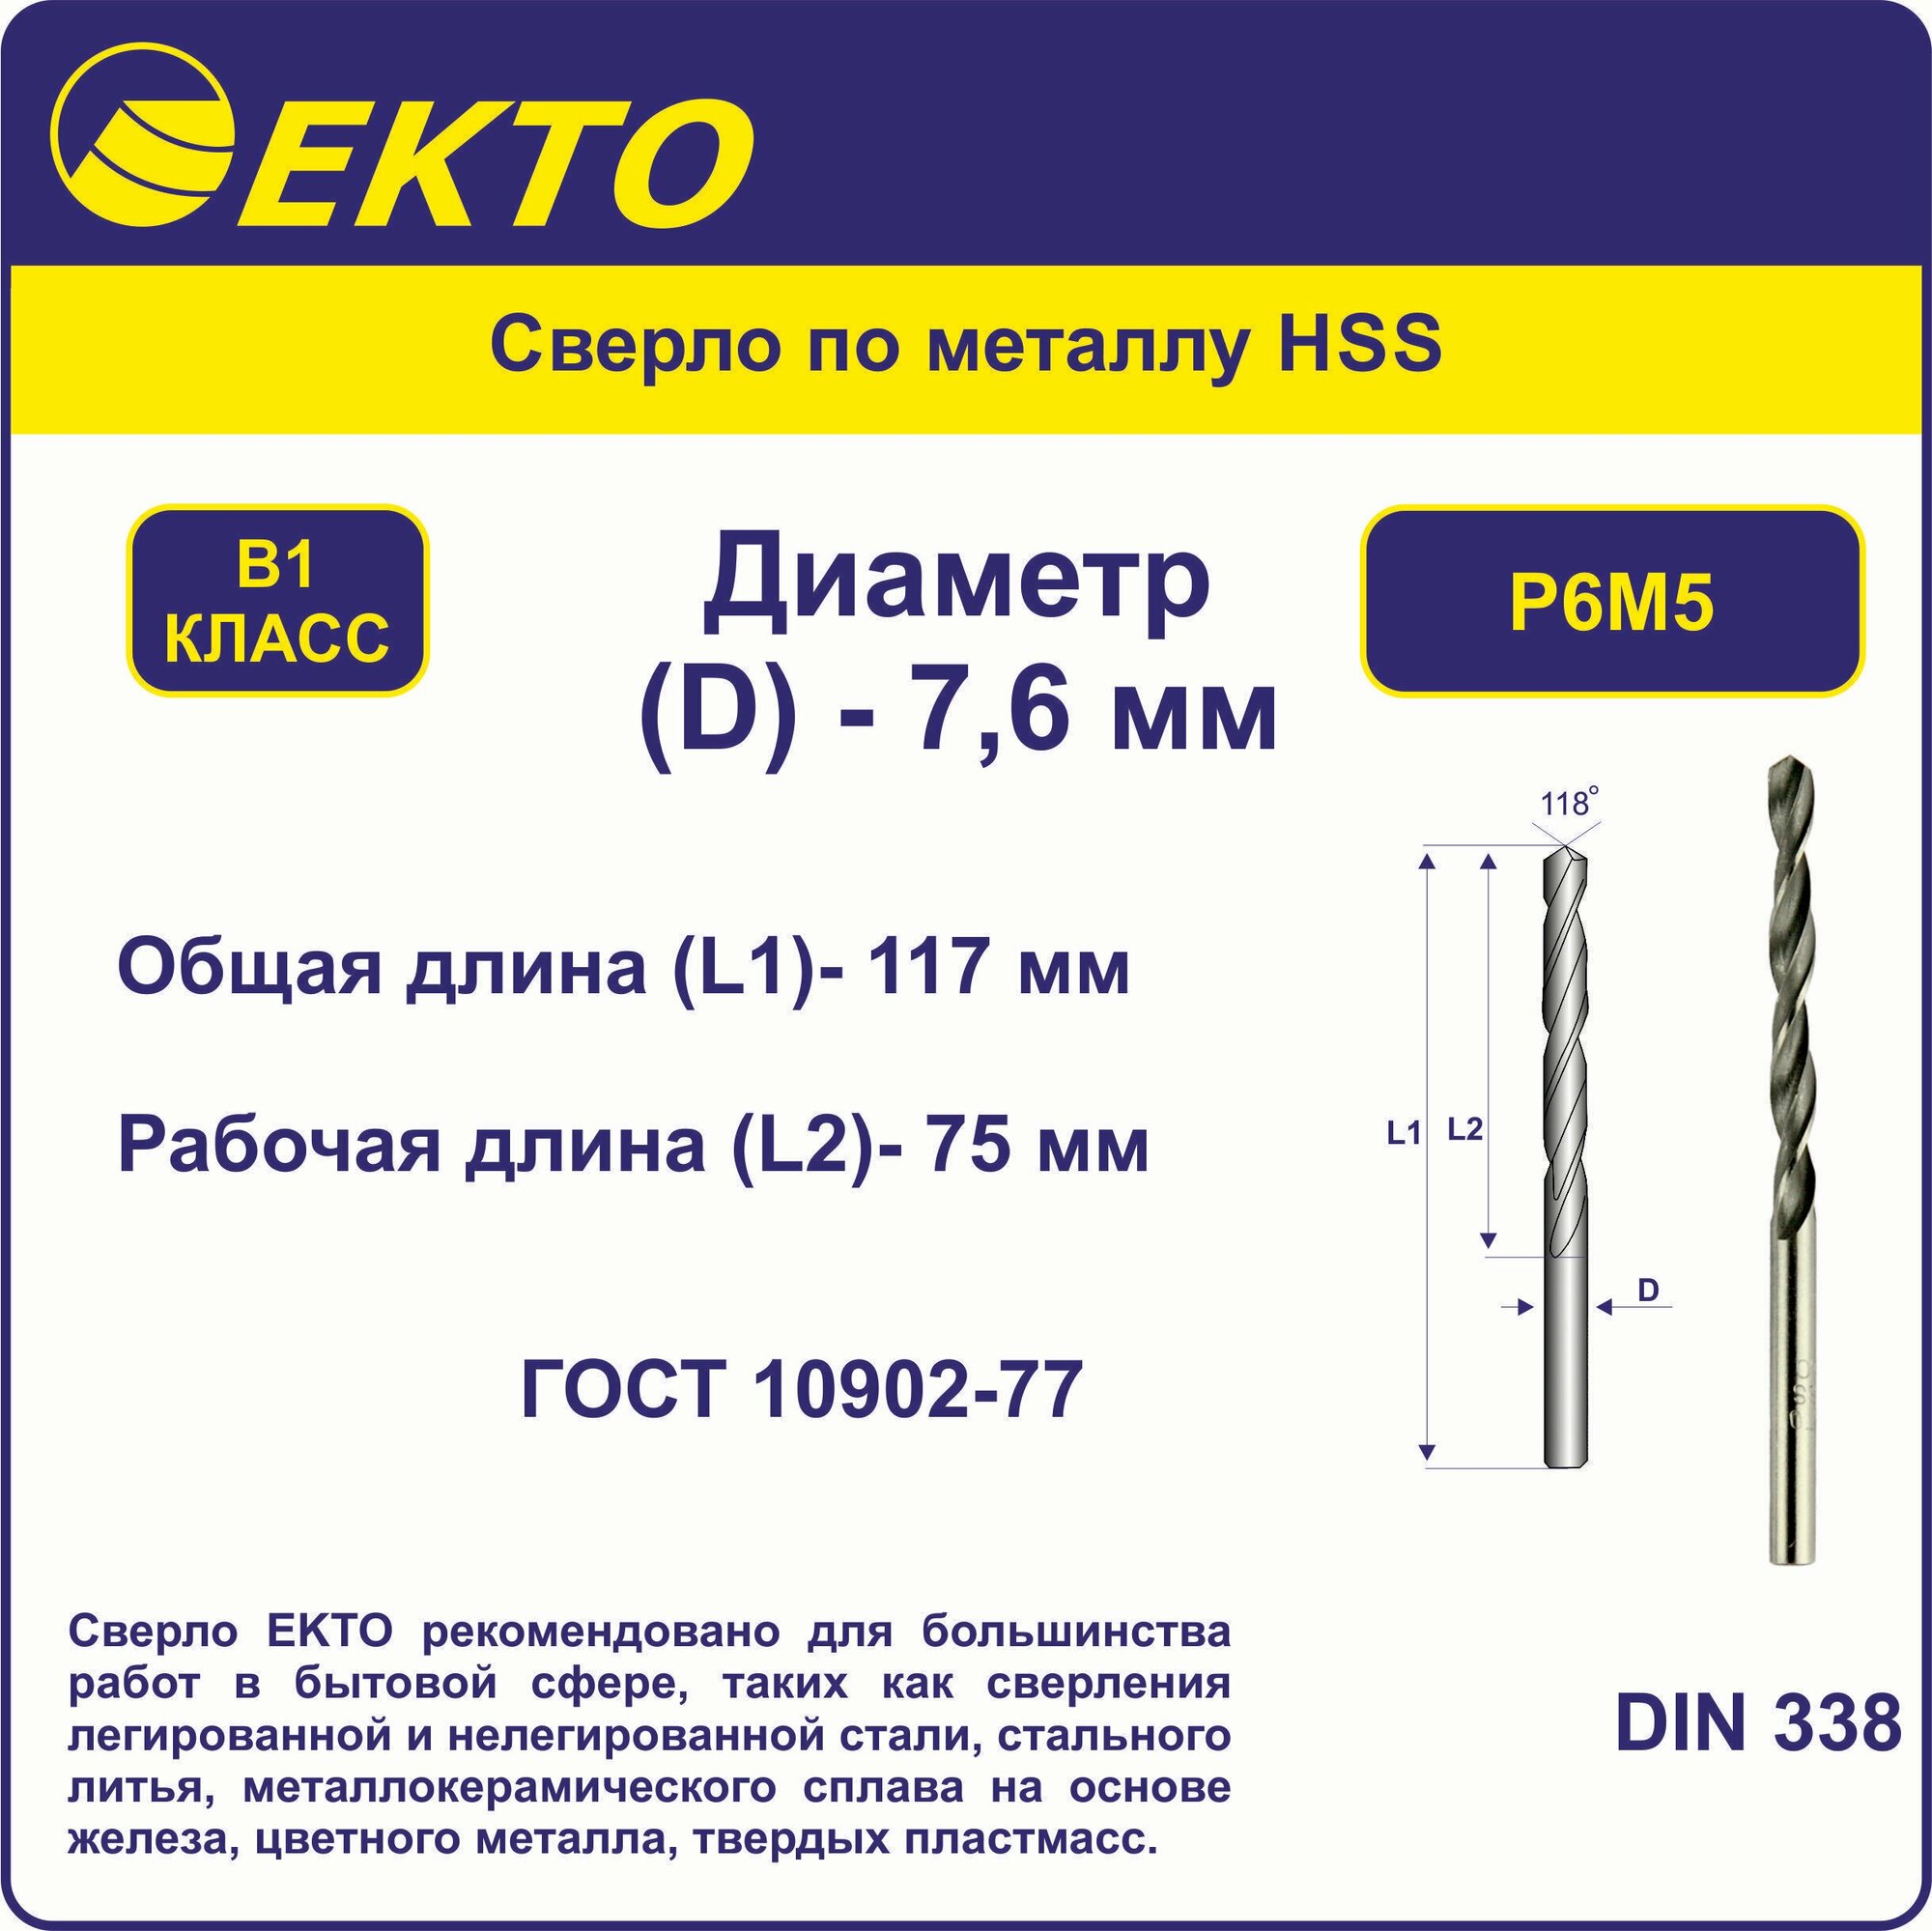 Сверло по металлу HSS 7,6 мм цилиндрический хвостовик EKTO